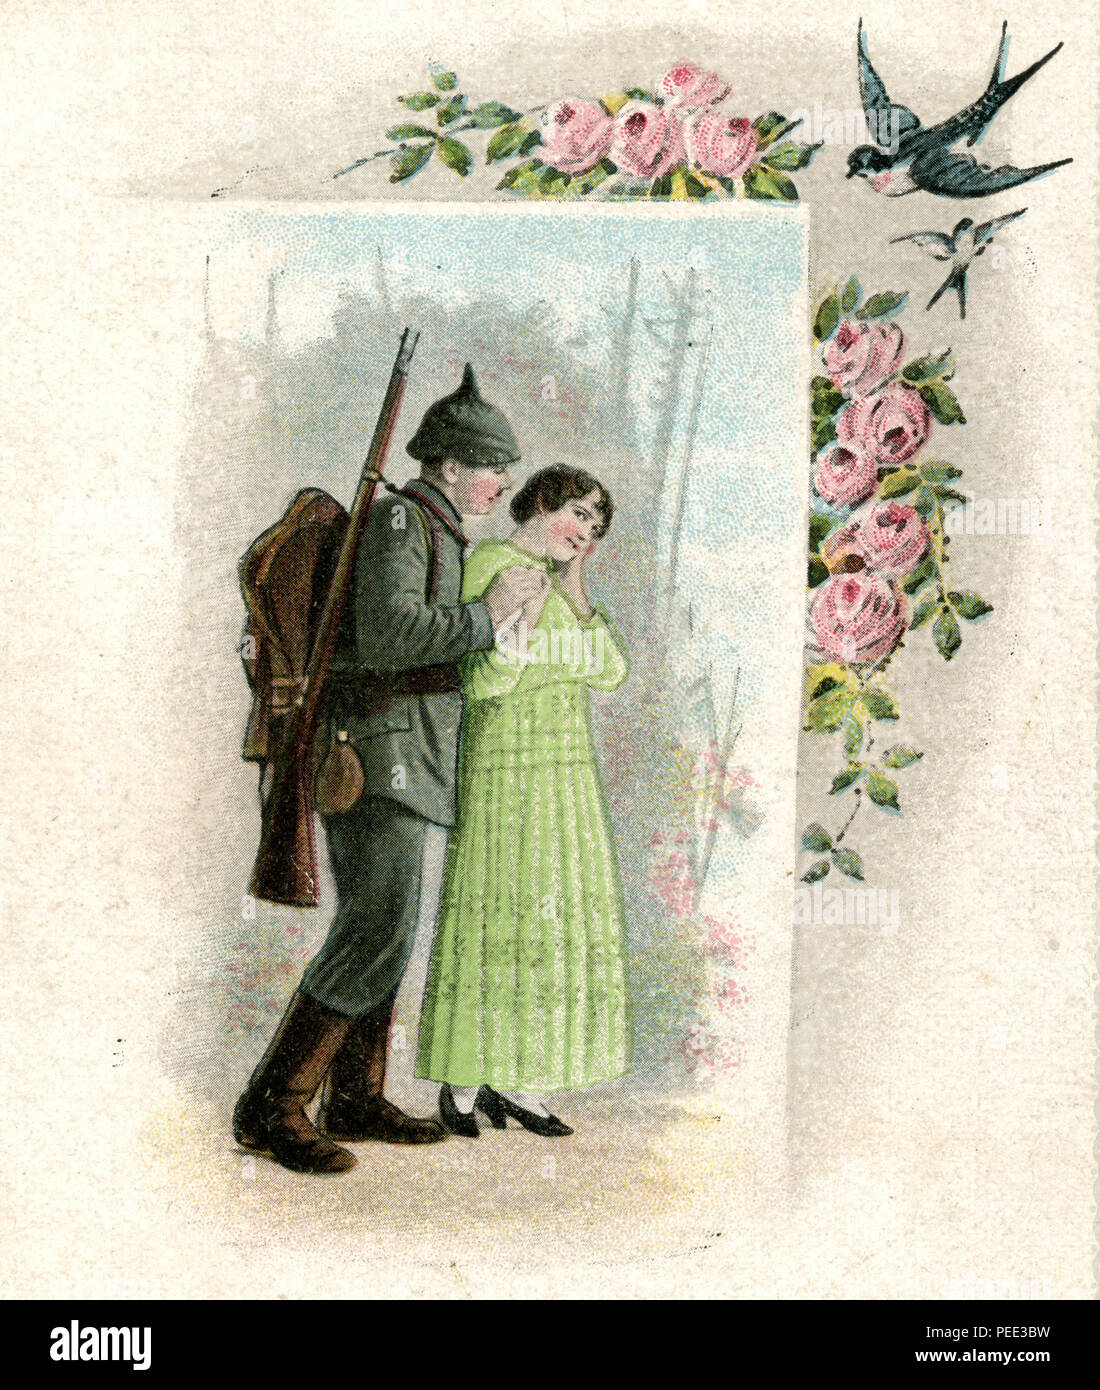 Despedida de una pareja de amantes, soldado con Pickelhaube y llorando chica, motivo de una tarjeta postal, sin utilizar Foto de stock